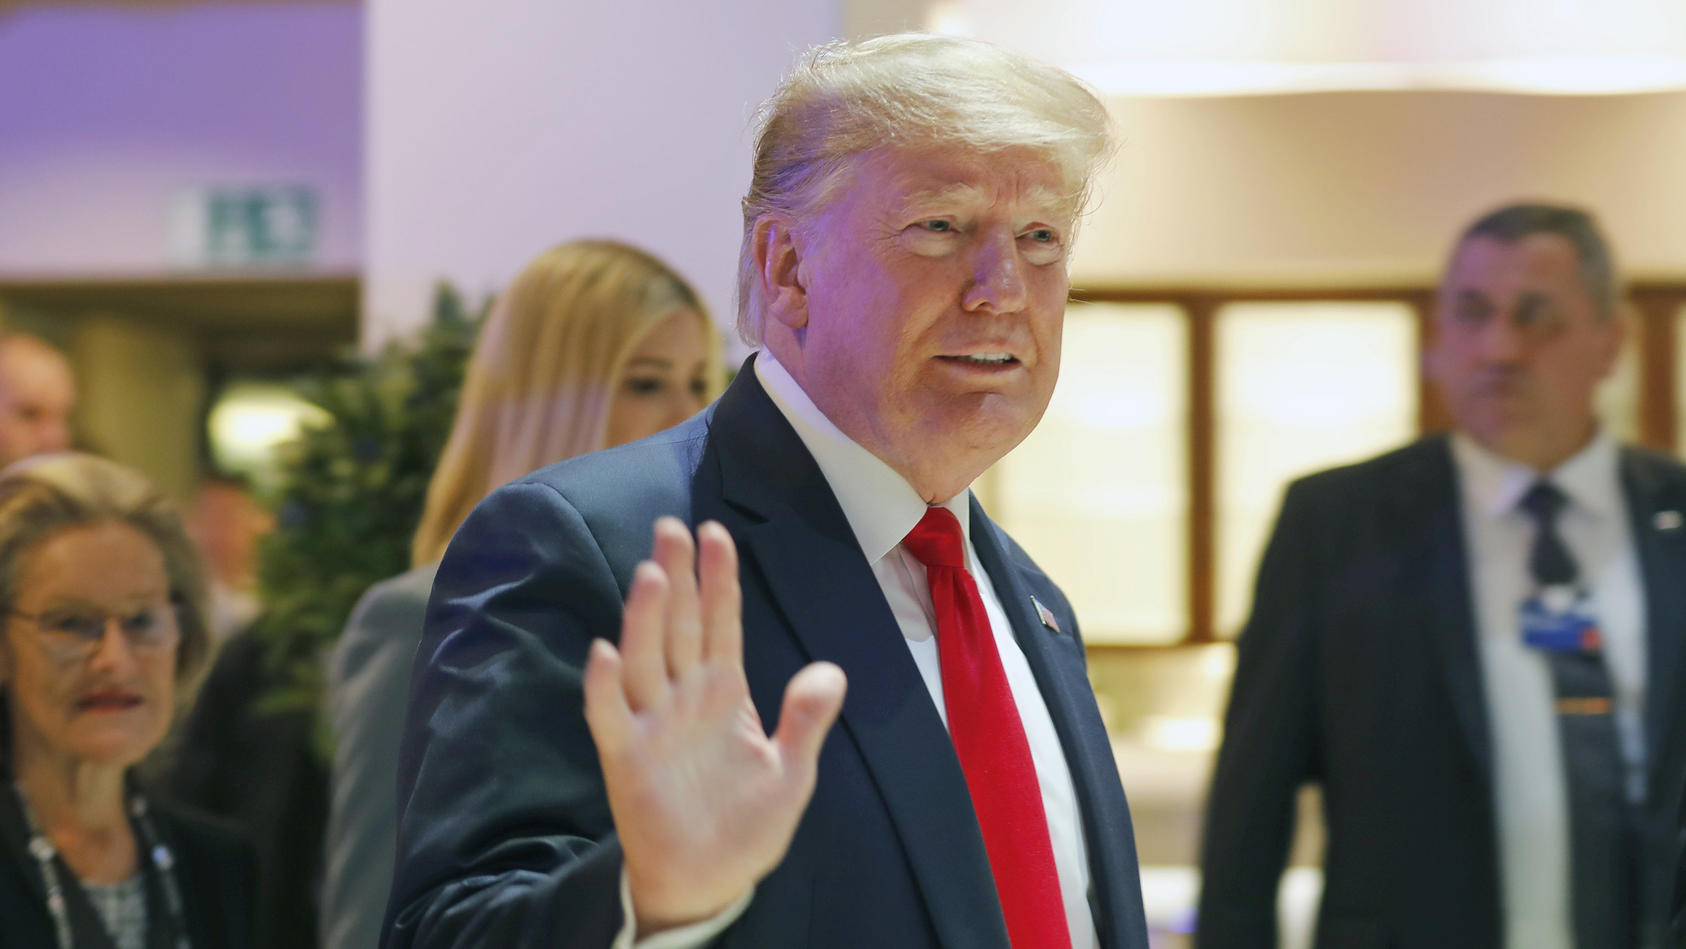 22.01.2020, Schweiz, Davos: US-Präsident Donald Trump kommt zur Sitzung des Weltwirtschaftsforums (WEF). Die 50. Jahrestagung des Forums findet vom 21. Januar bis zum 24. Januar 2020 in Davos statt. Foto: Markus Schreiber/AP/dpa +++ dpa-Bildfunk +++